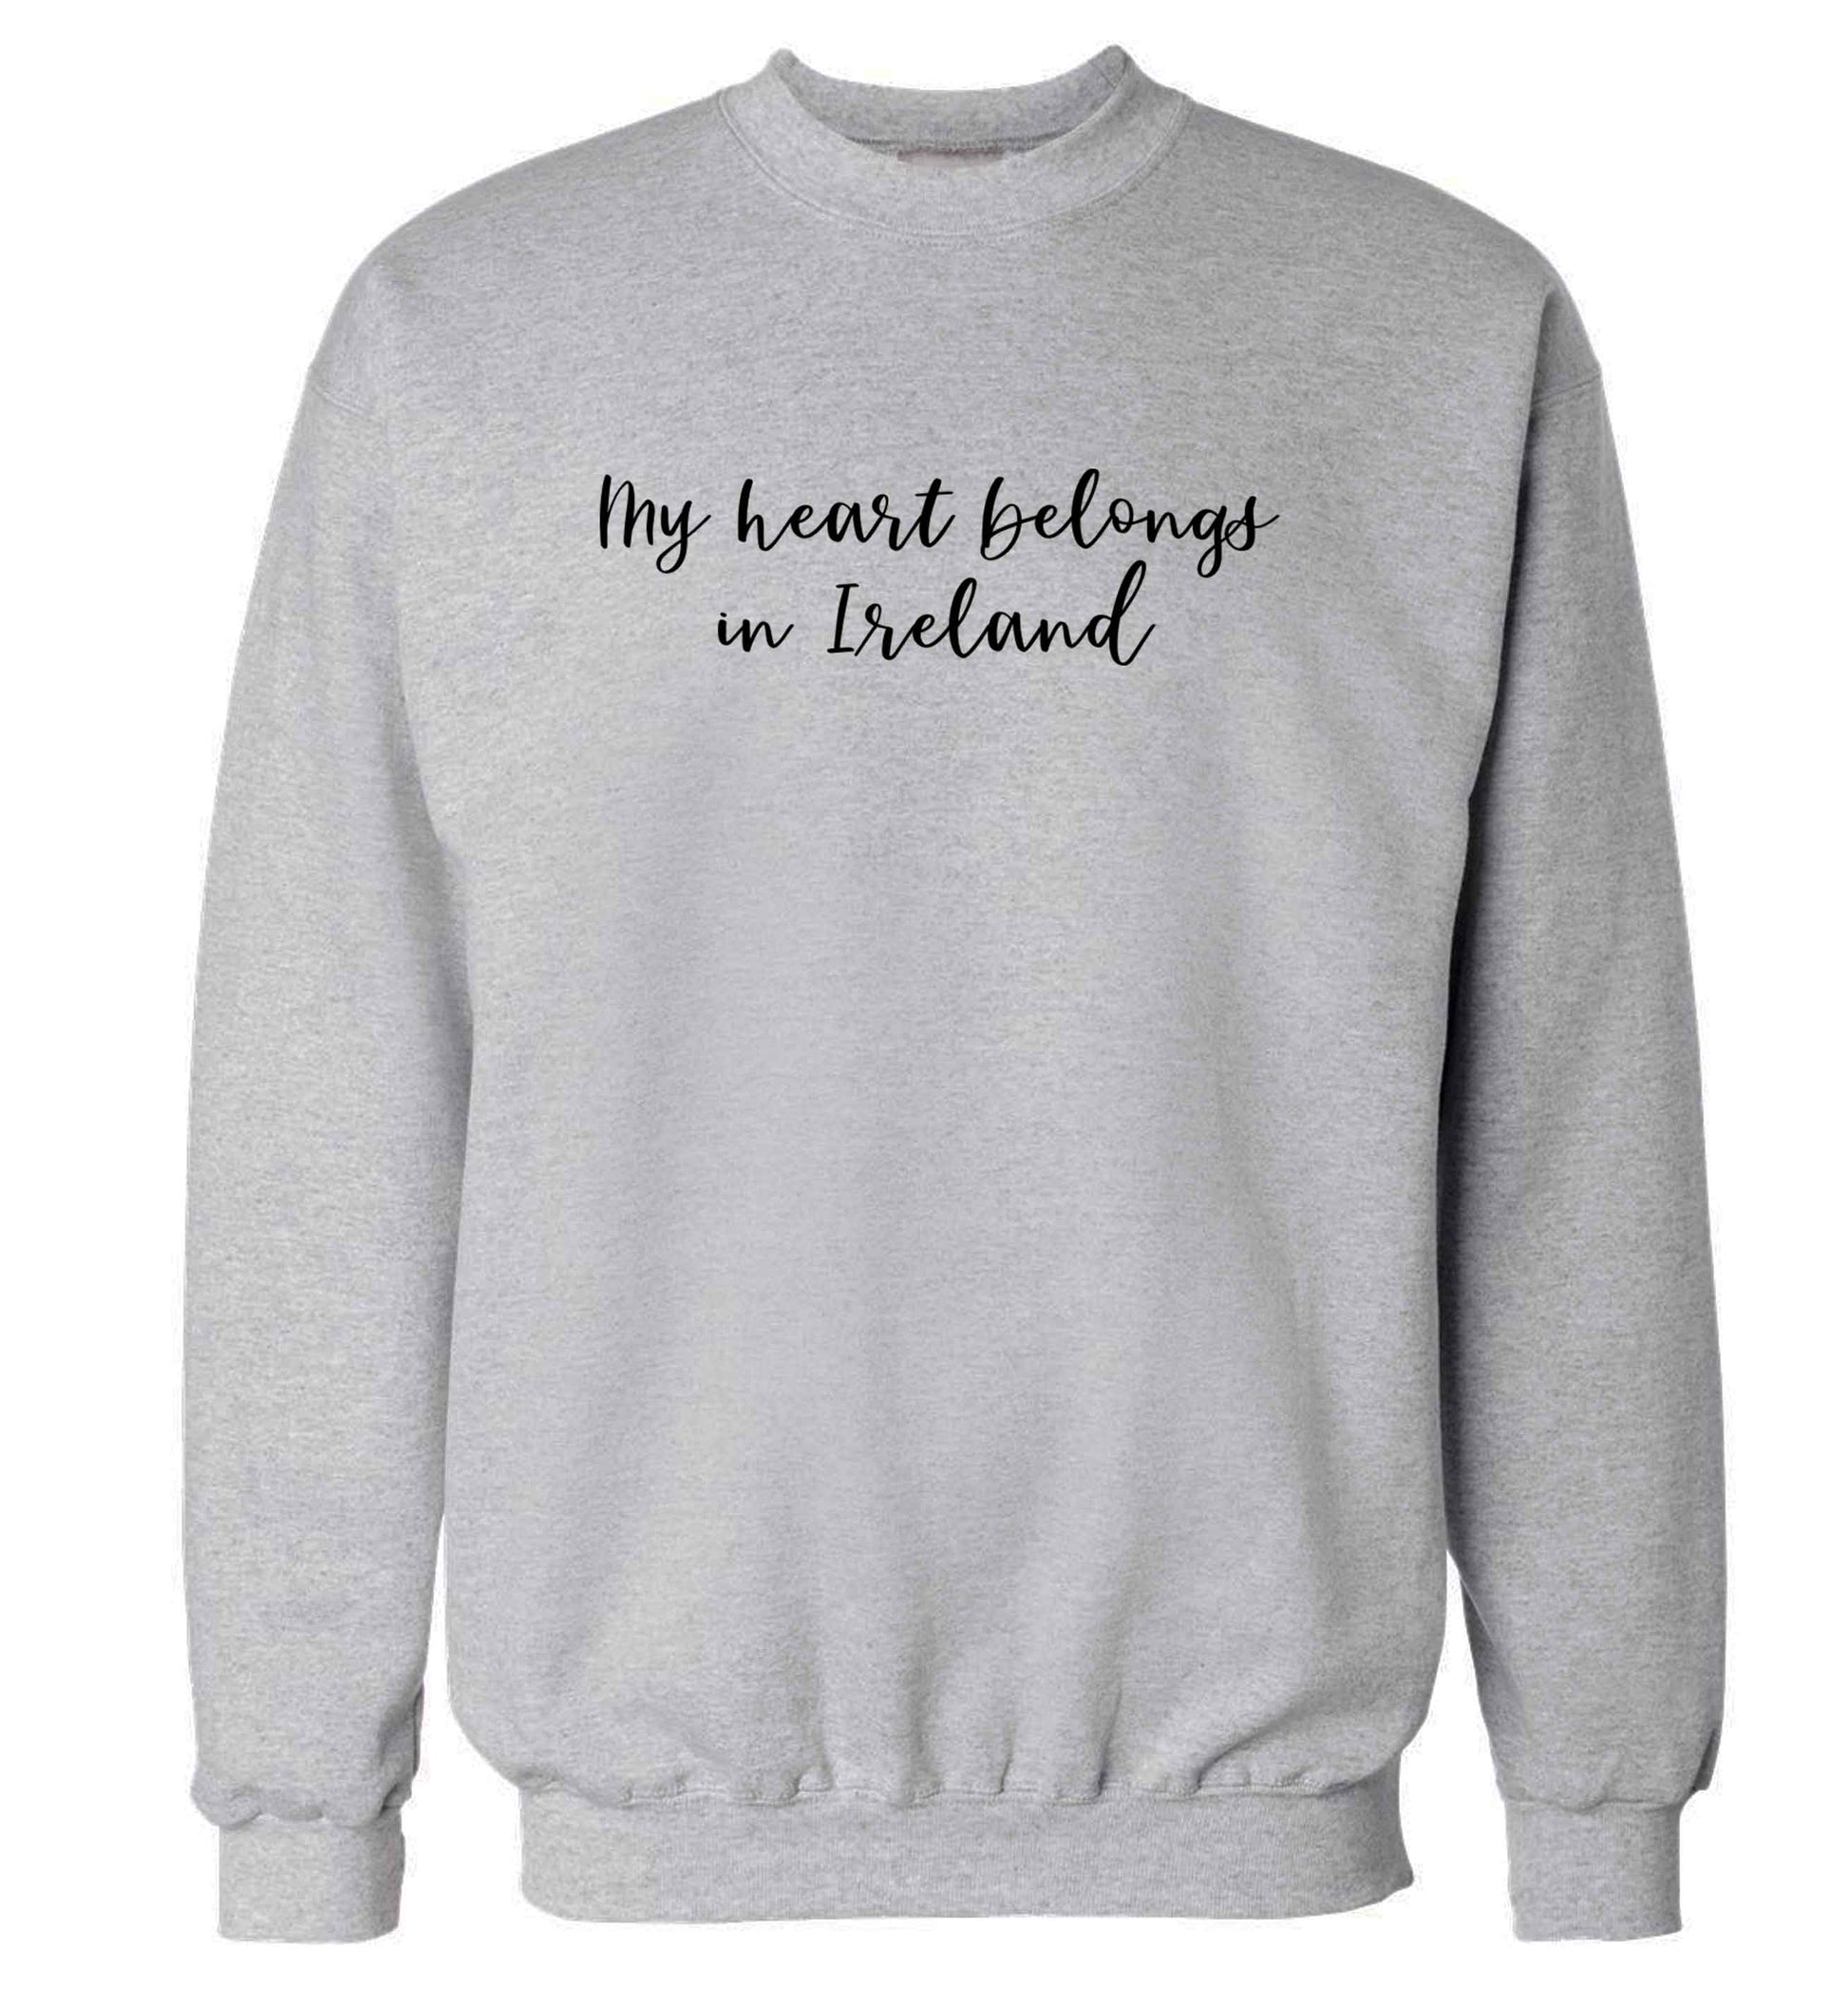 My heart belongs in Ireland adult's unisex grey sweater 2XL